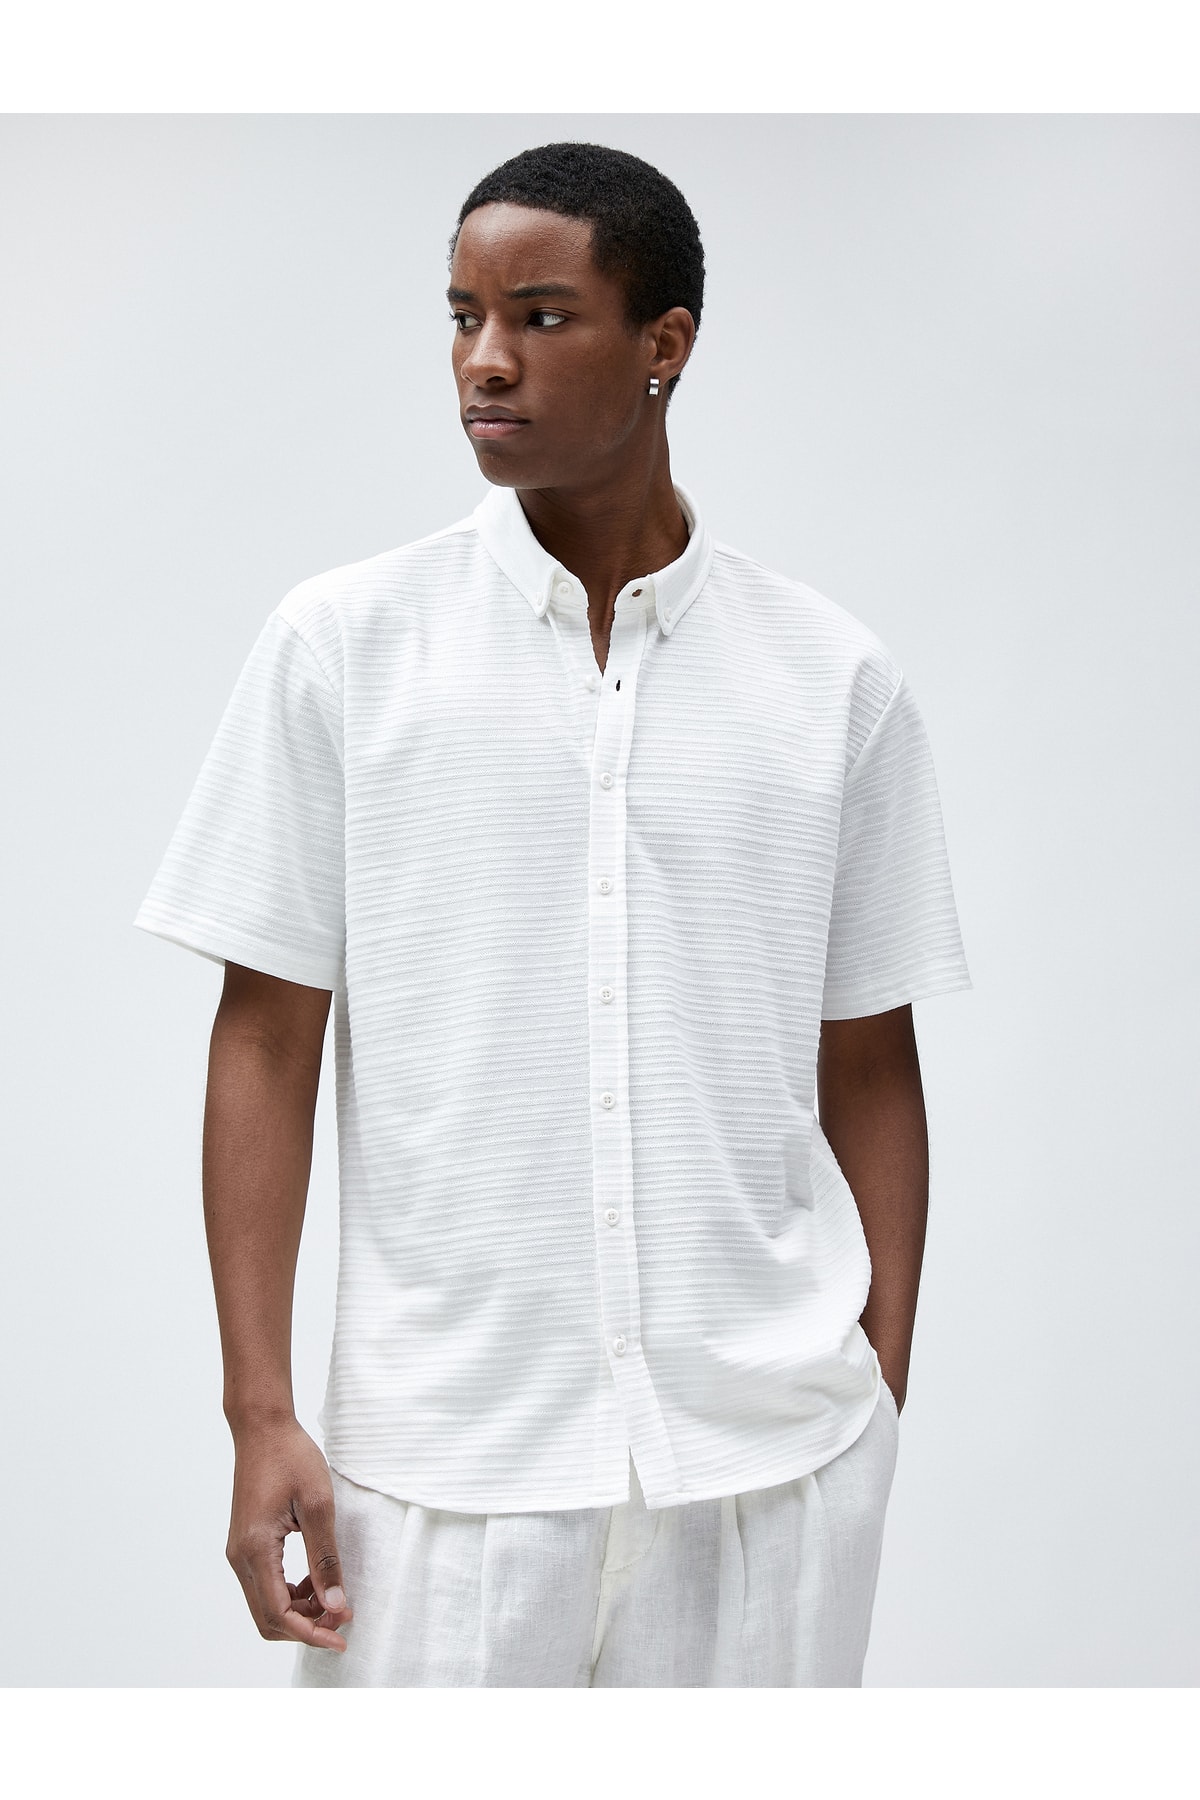 Koton Summer Short Sleeve Shirt Textured Classic Collar Buttoned